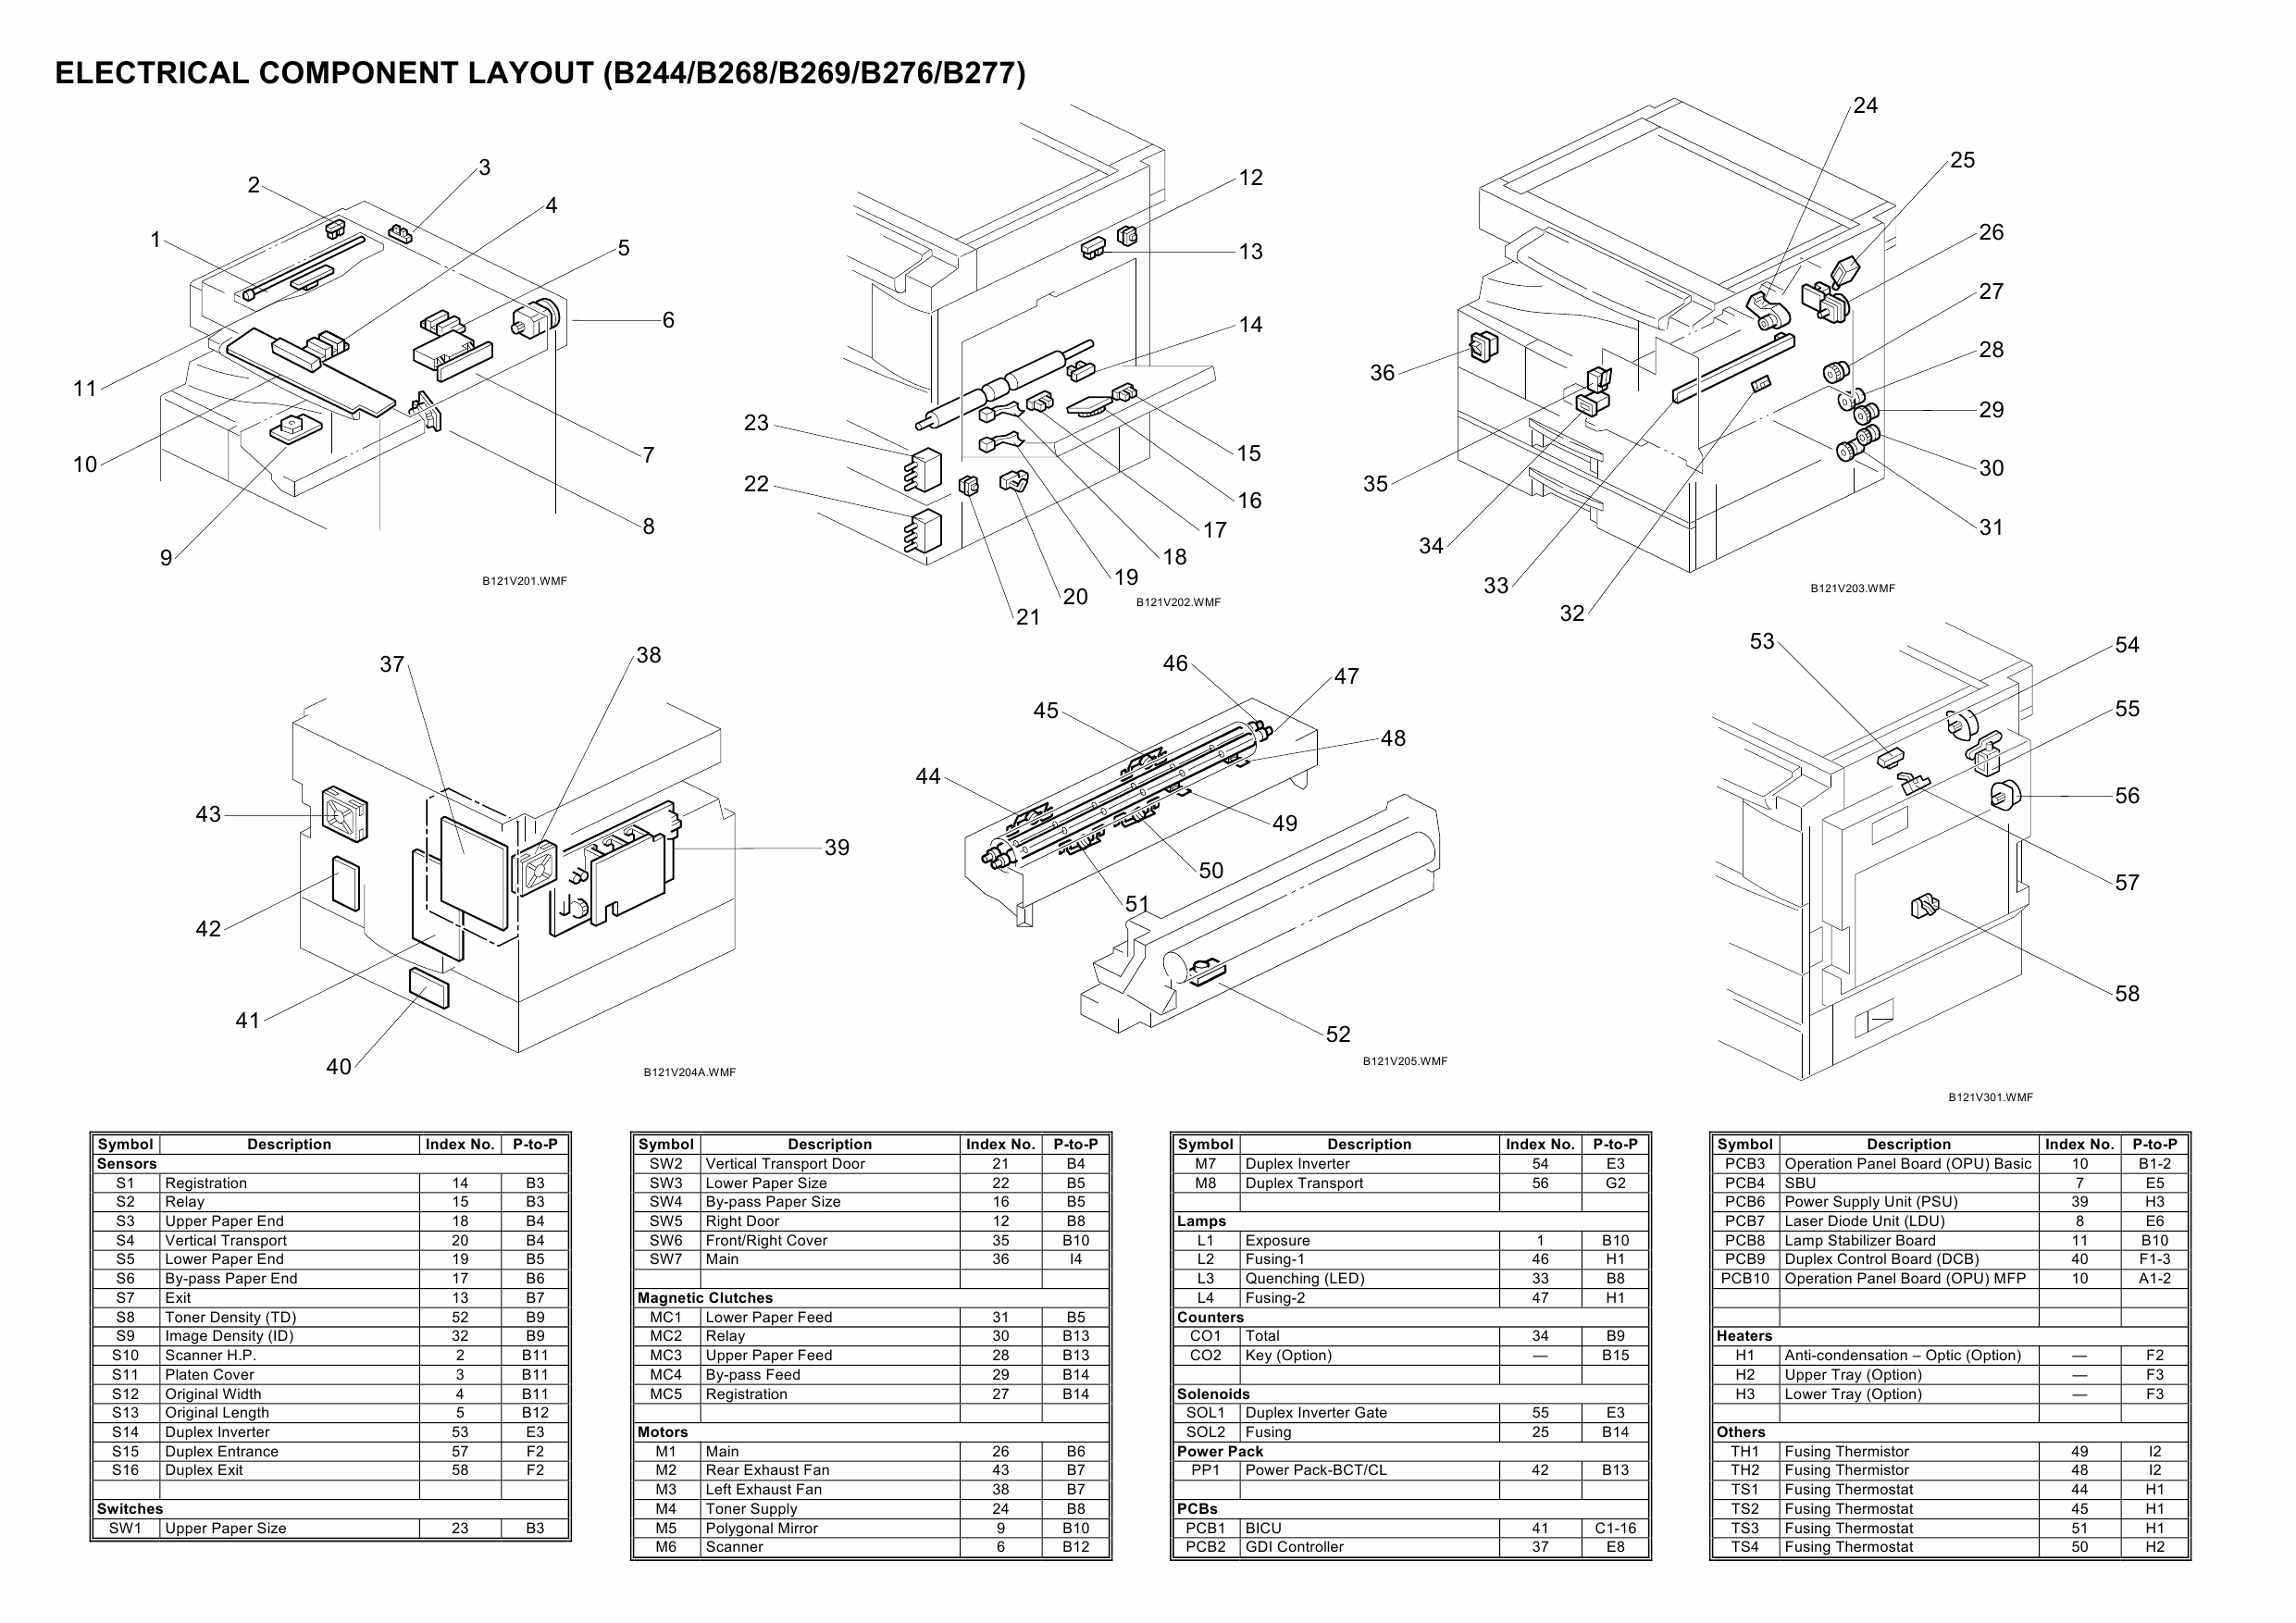 RICOH Aficio MP-1600L2 B244 B276 B277 B268 B269 Circuit Diagram-2